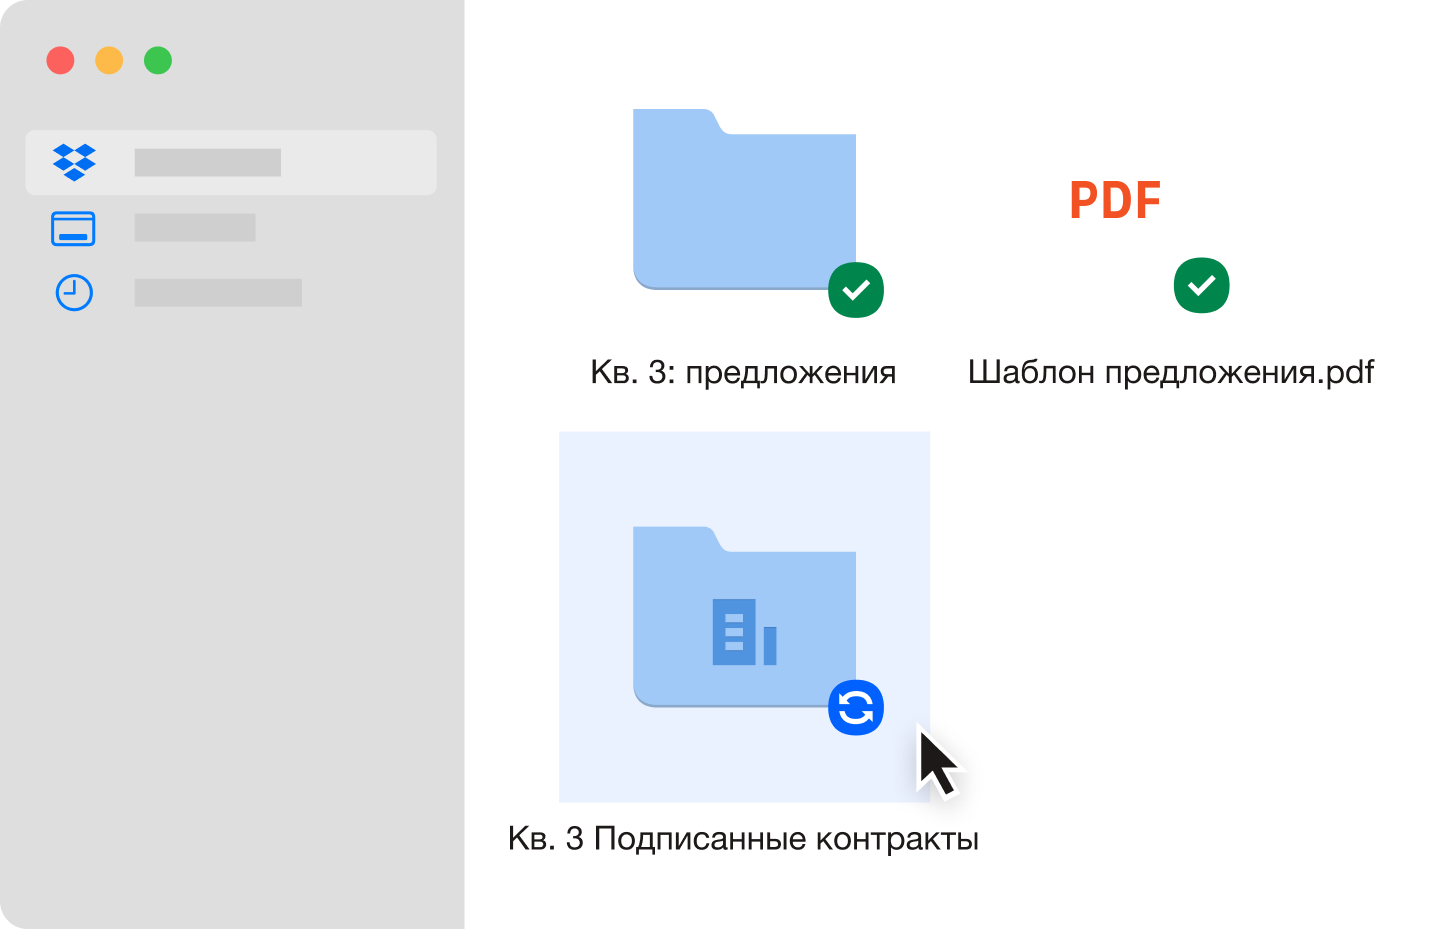 Две синие папки с файлами и файл PDF, которые были синхронизированы в аккаунте Dropbox